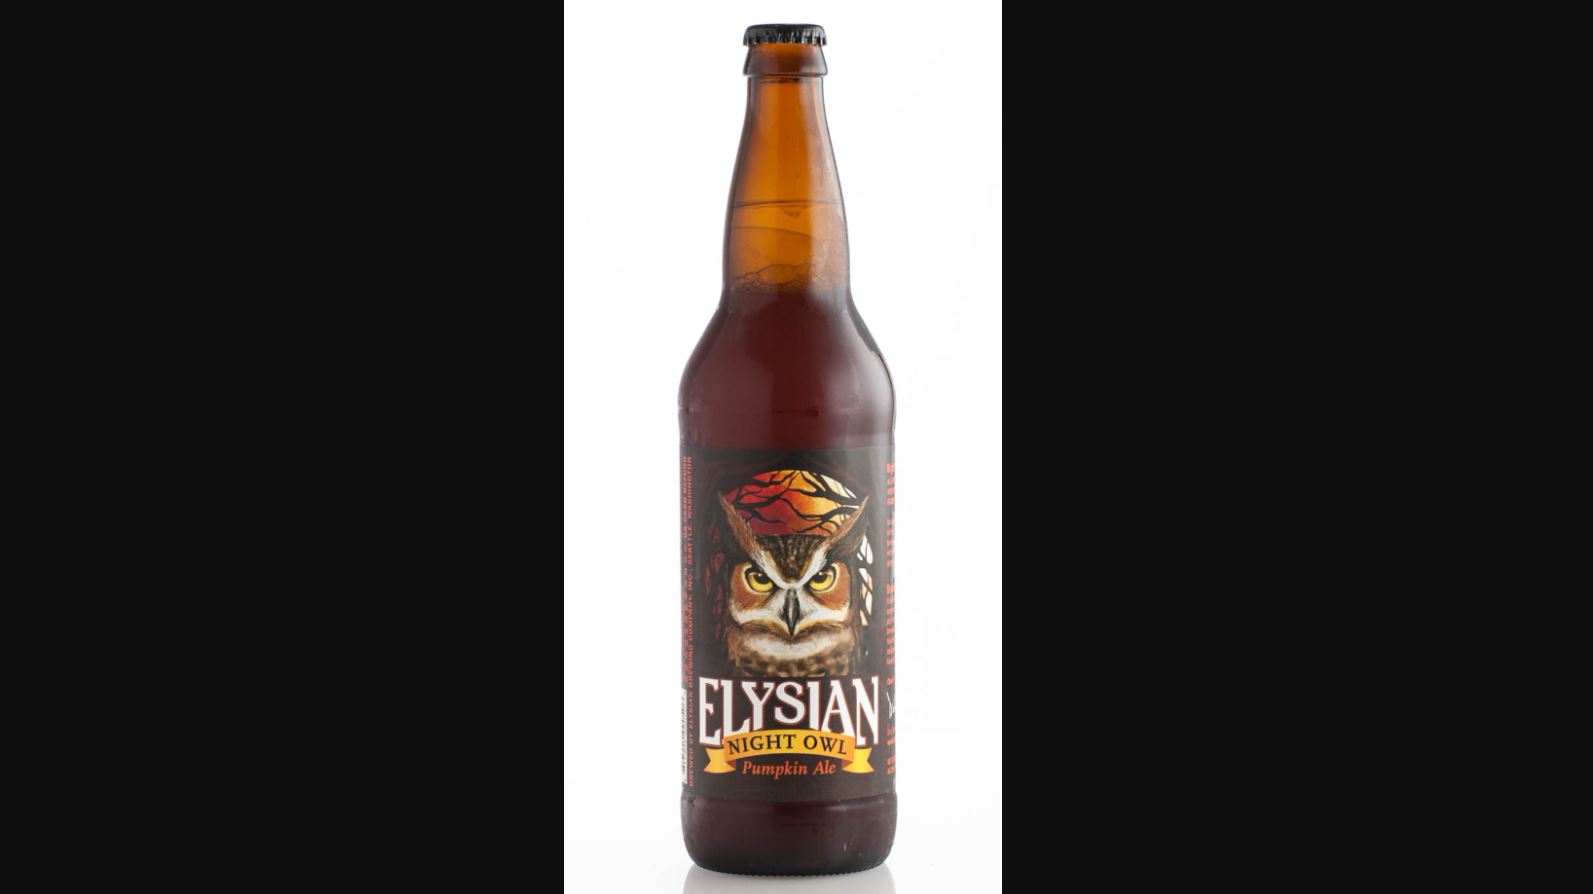 Elysian Night Owl